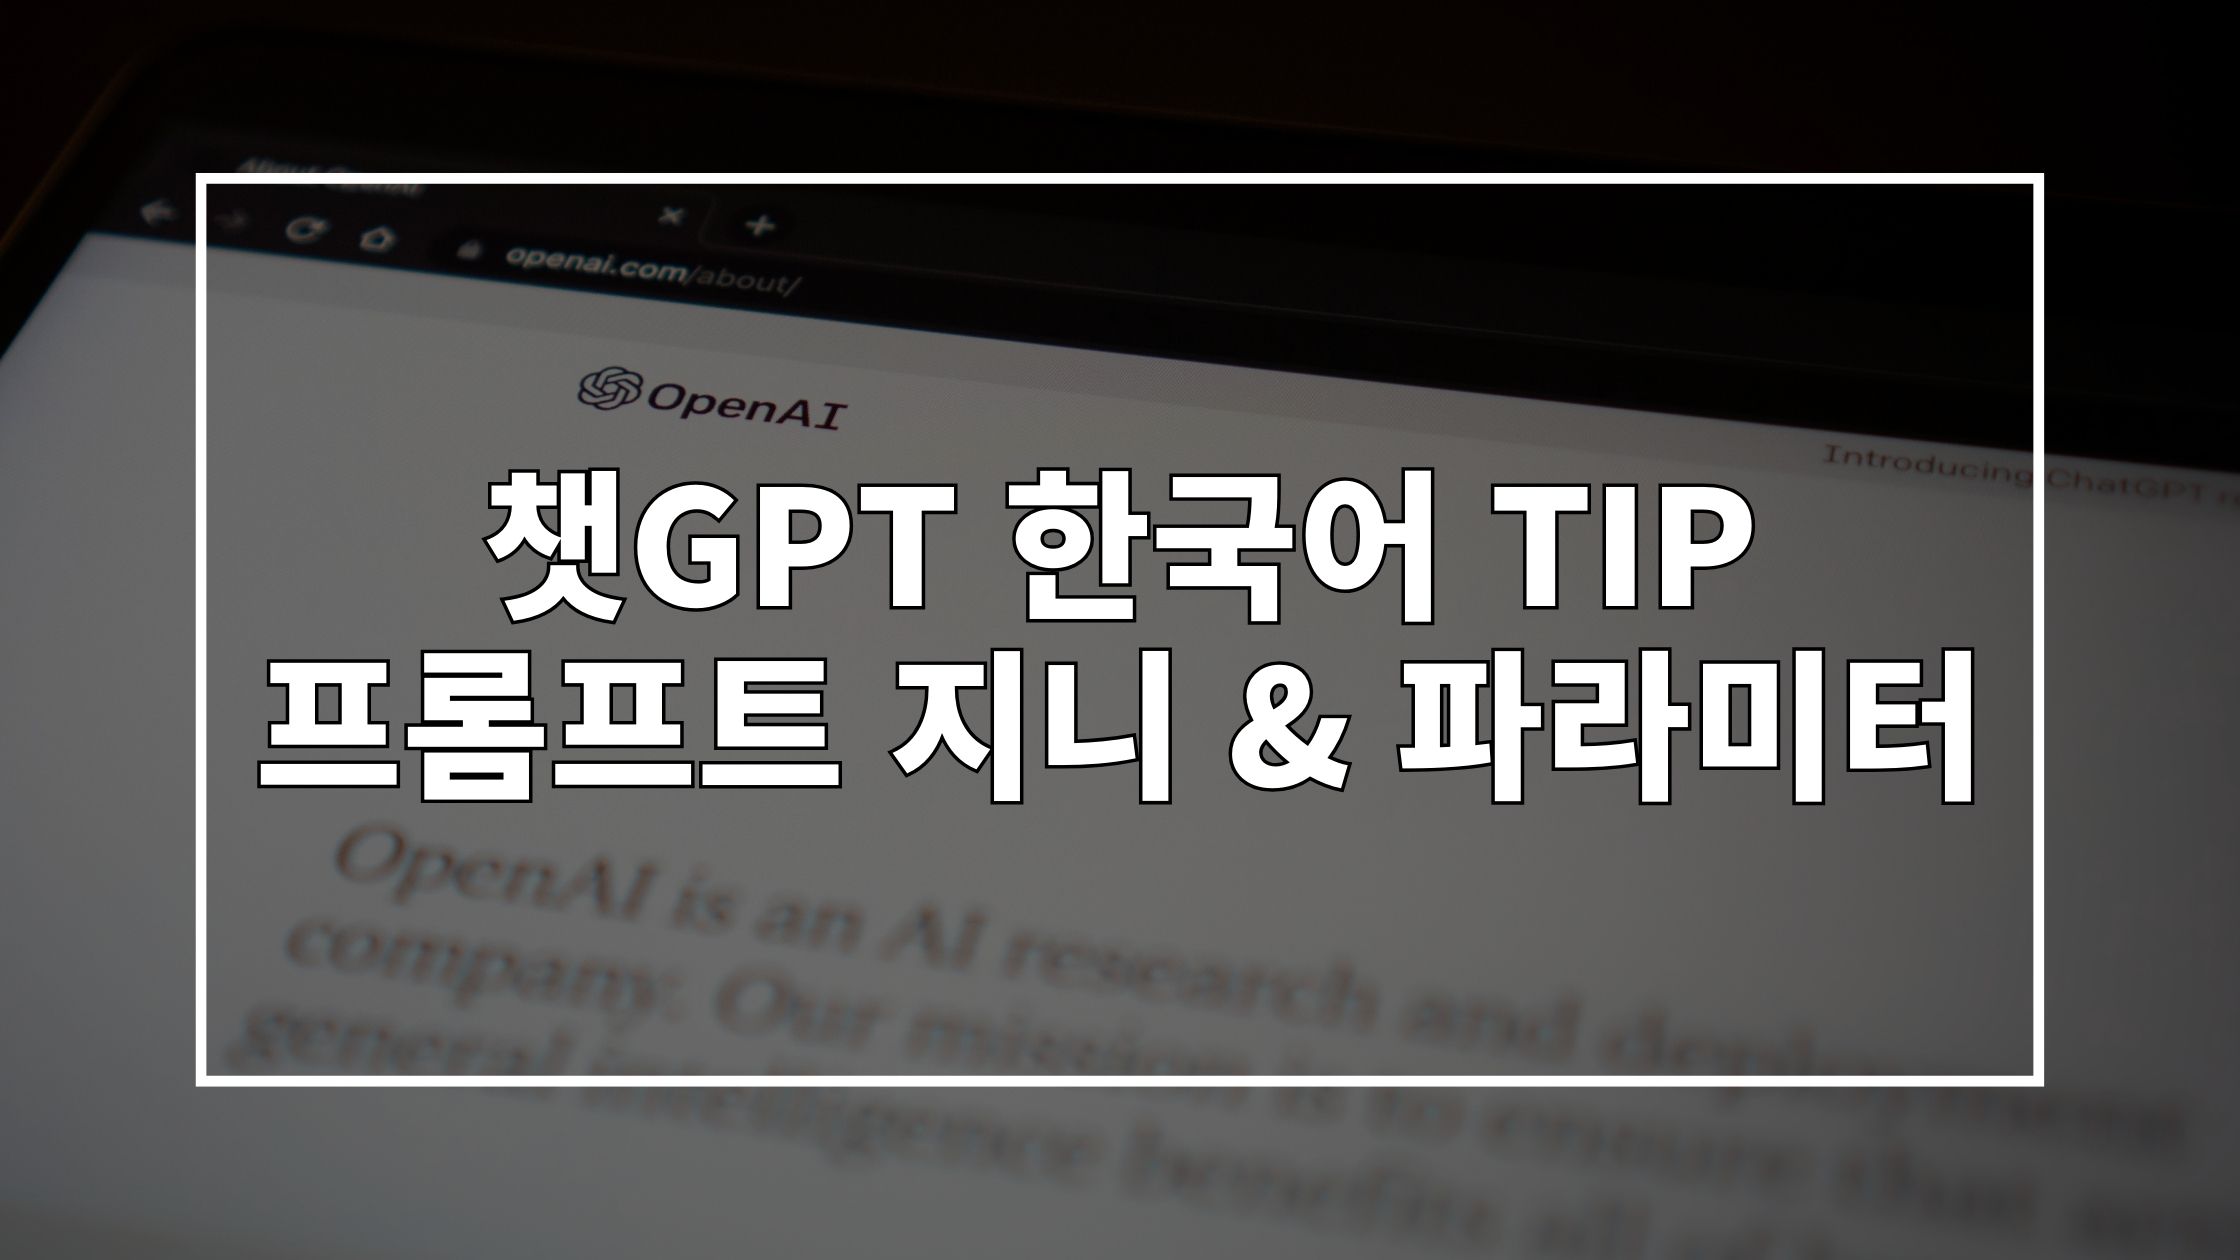 노트북 화면에 OpenAI 홈페이지가 켜져있는 사진 위에 '챗GPT 한국어 TIP 프롬프트 지니 & 파라미터'라고 쓰여있는 썸네일 이미지입니다.